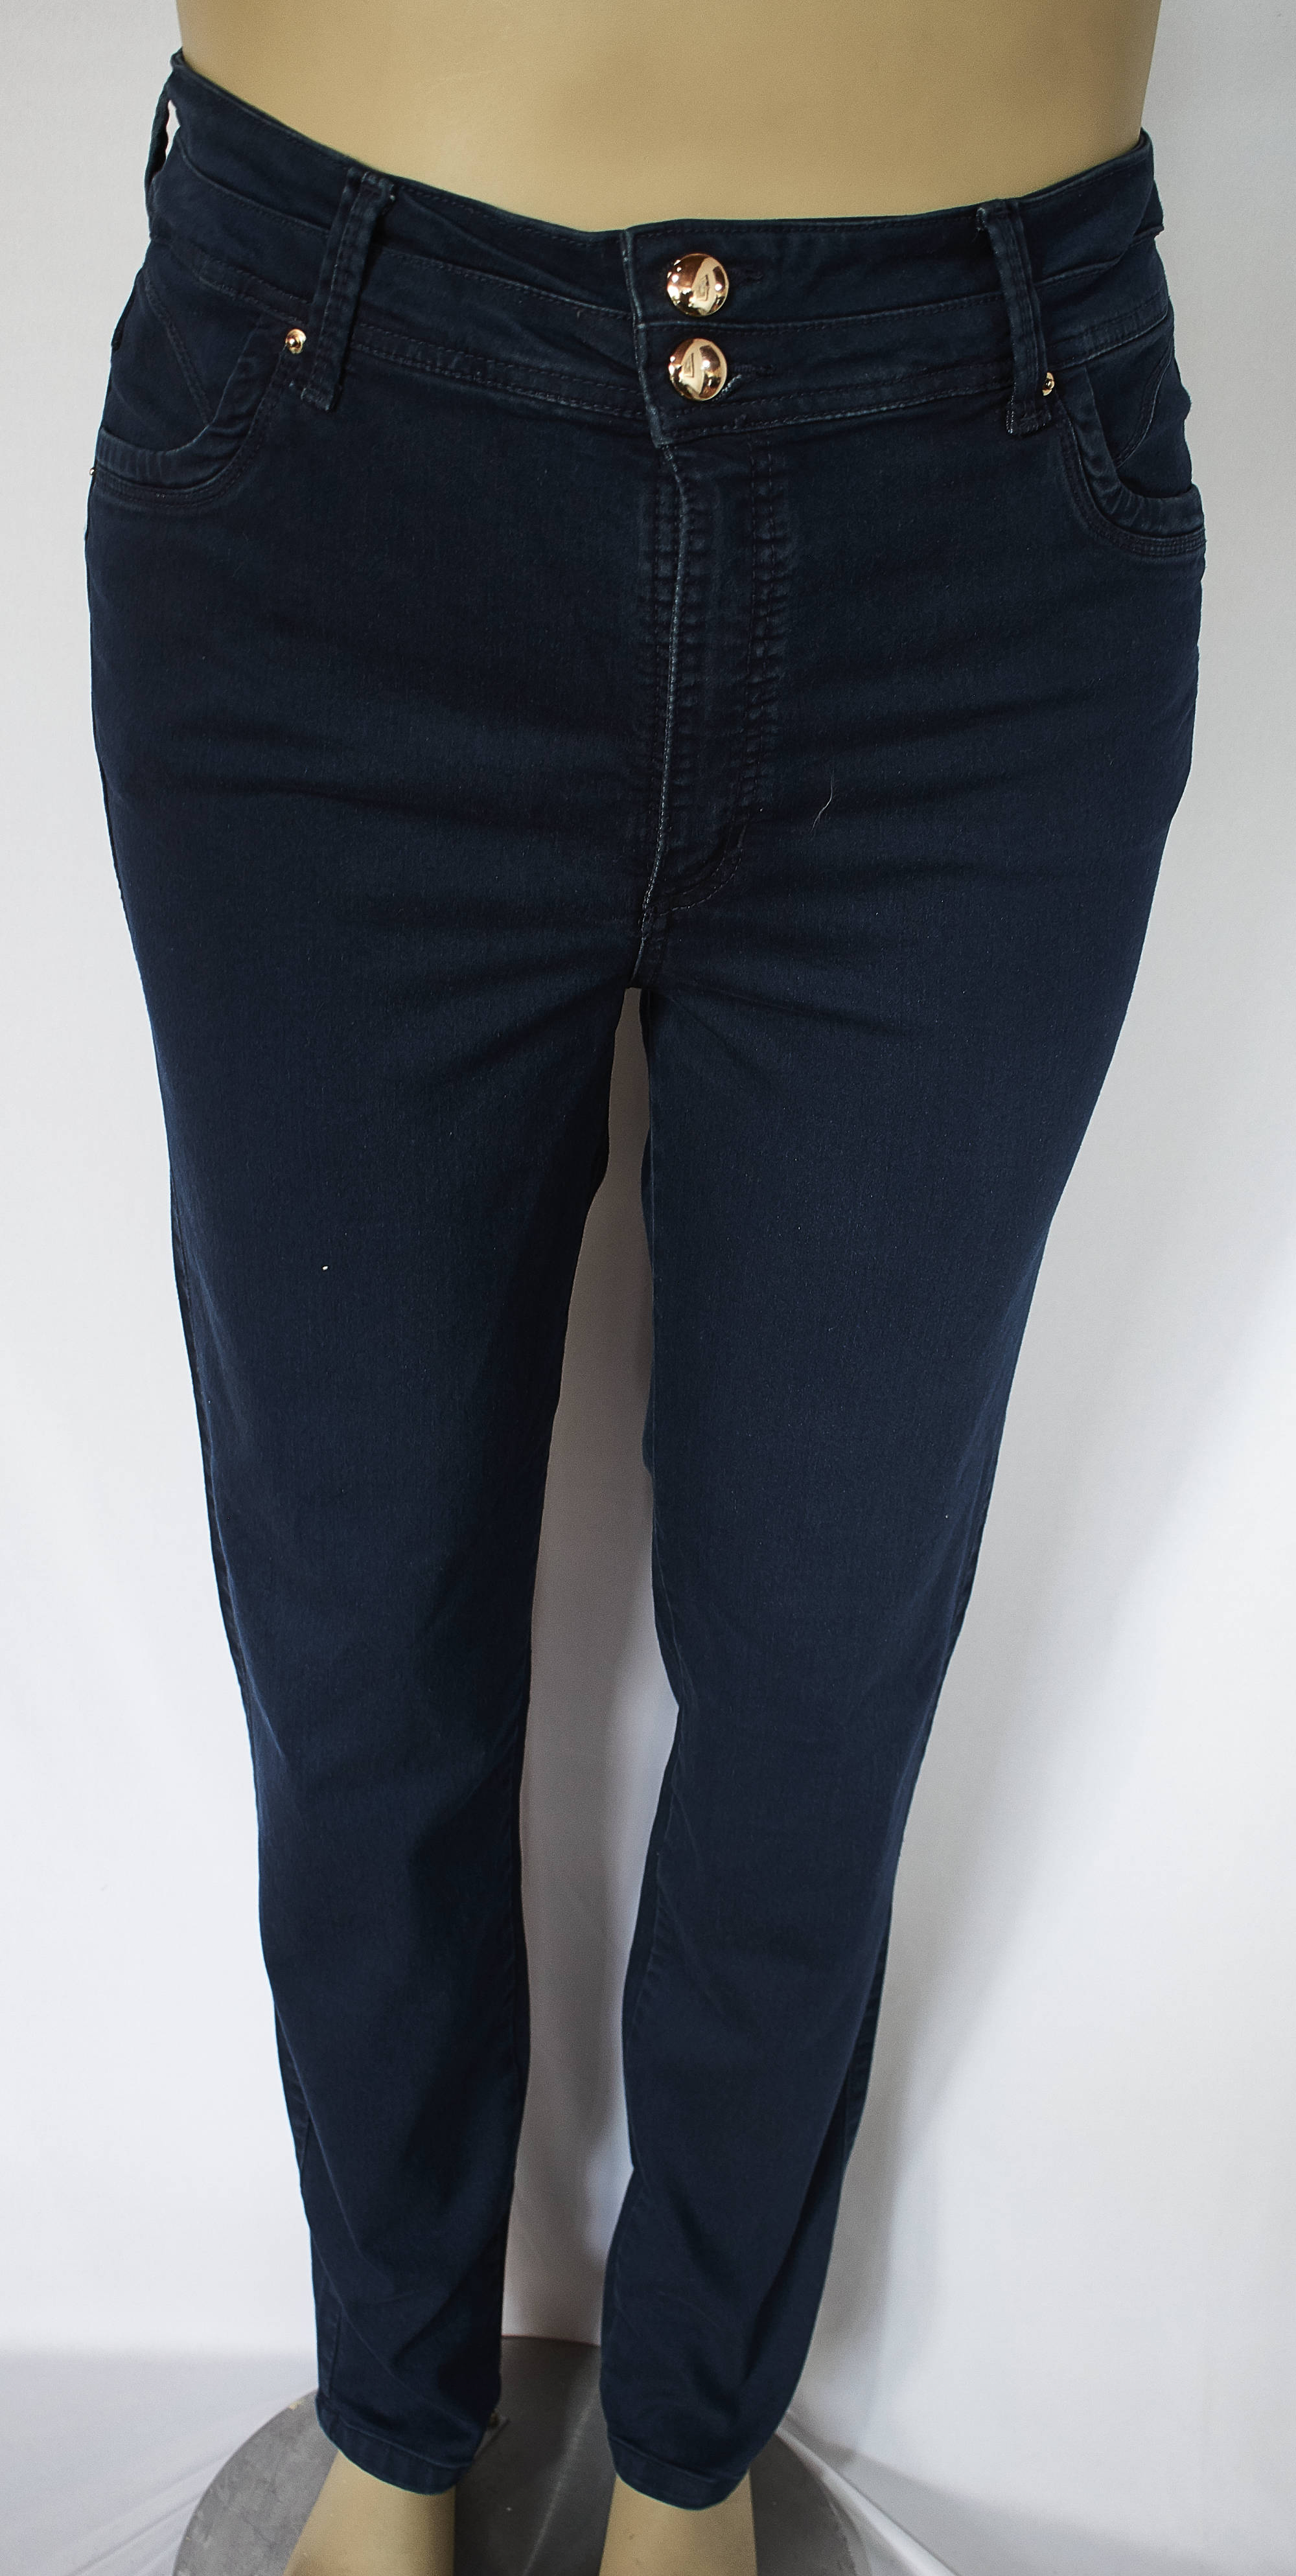 Pantalones Jeans Azul, piel de durazno Tallas 16 a la 22 de JoPlus Tallas Grandes